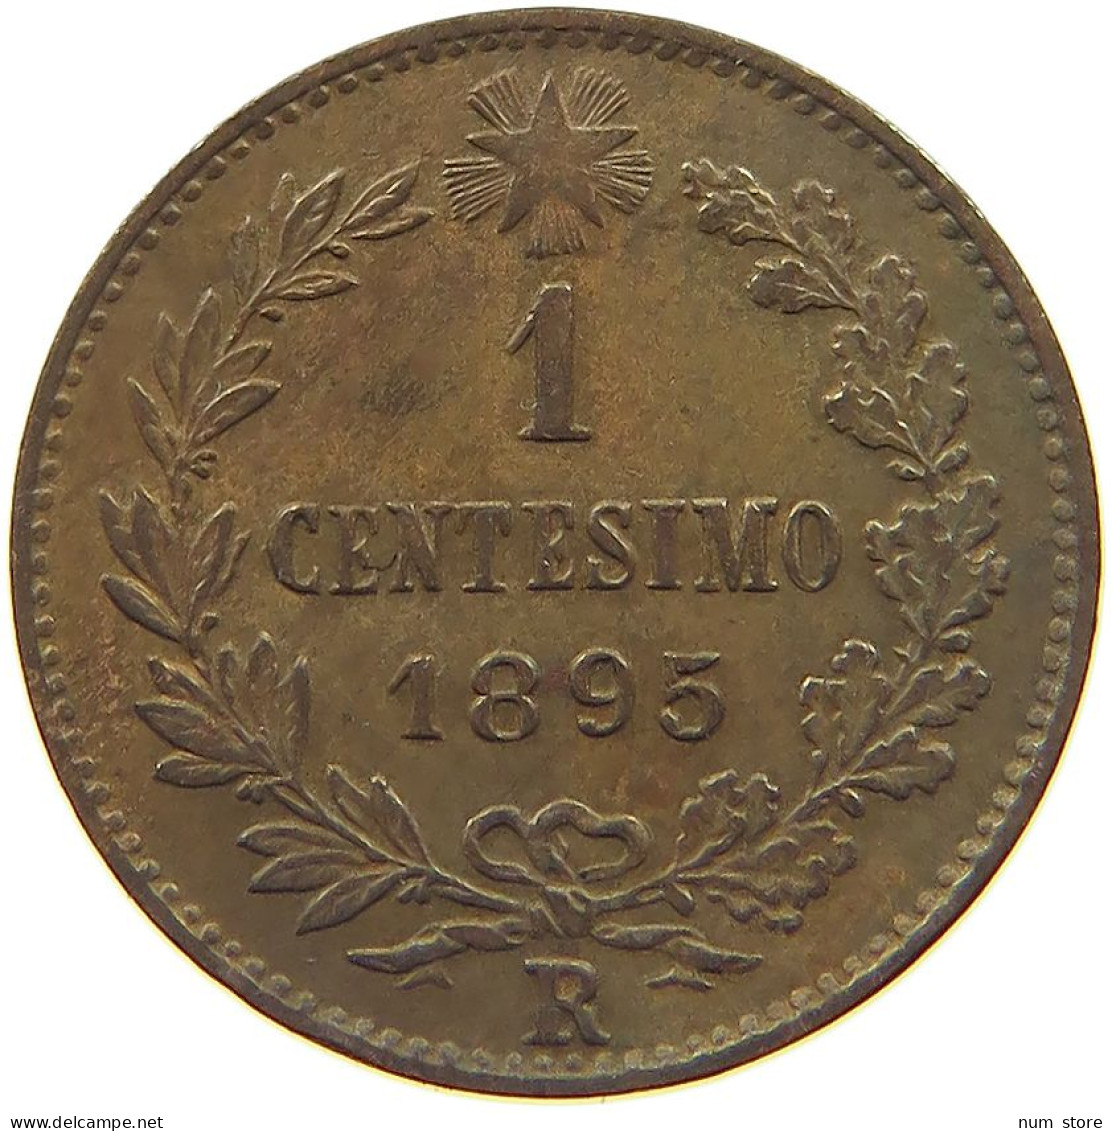 ITALY CENTESIMO 1895 R UMBERTO I. 1878-1900 #MA 022768 - 1878-1900 : Umberto I